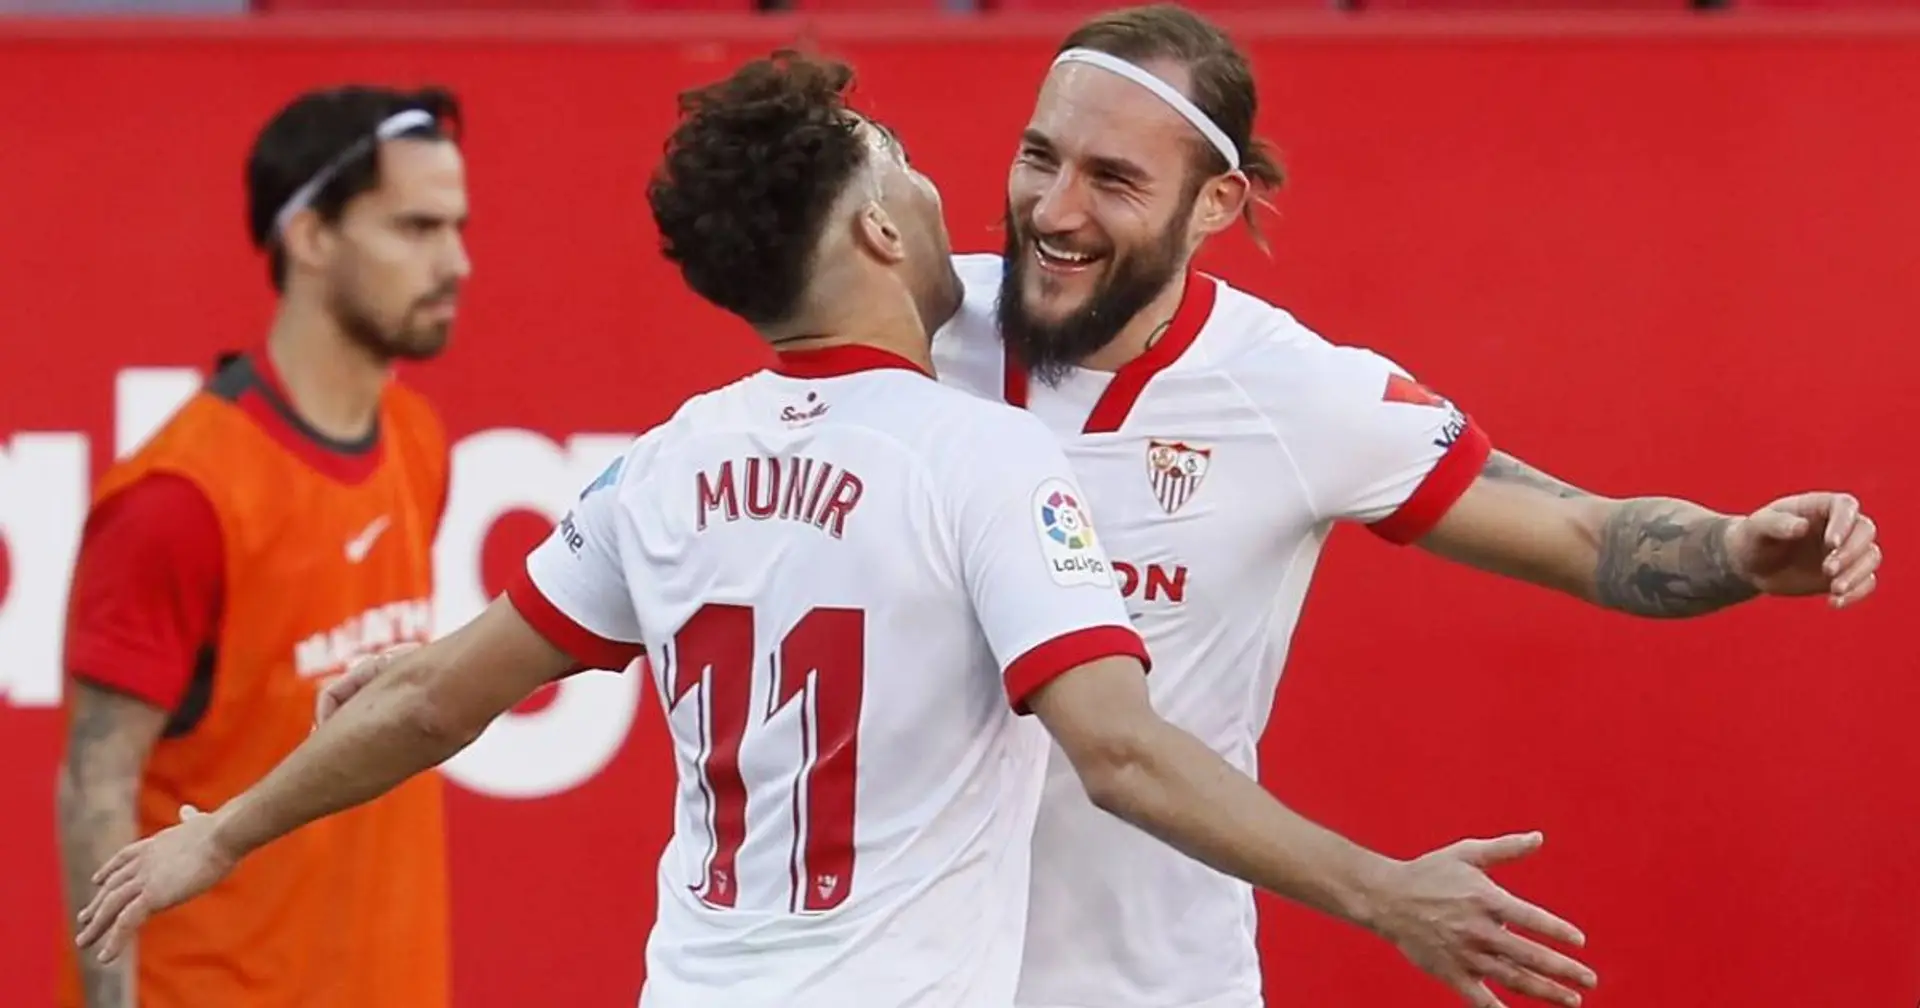 Gegnerübersicht: Sevilla gelingt Generalprobe vor dem Spiel gegen BVB